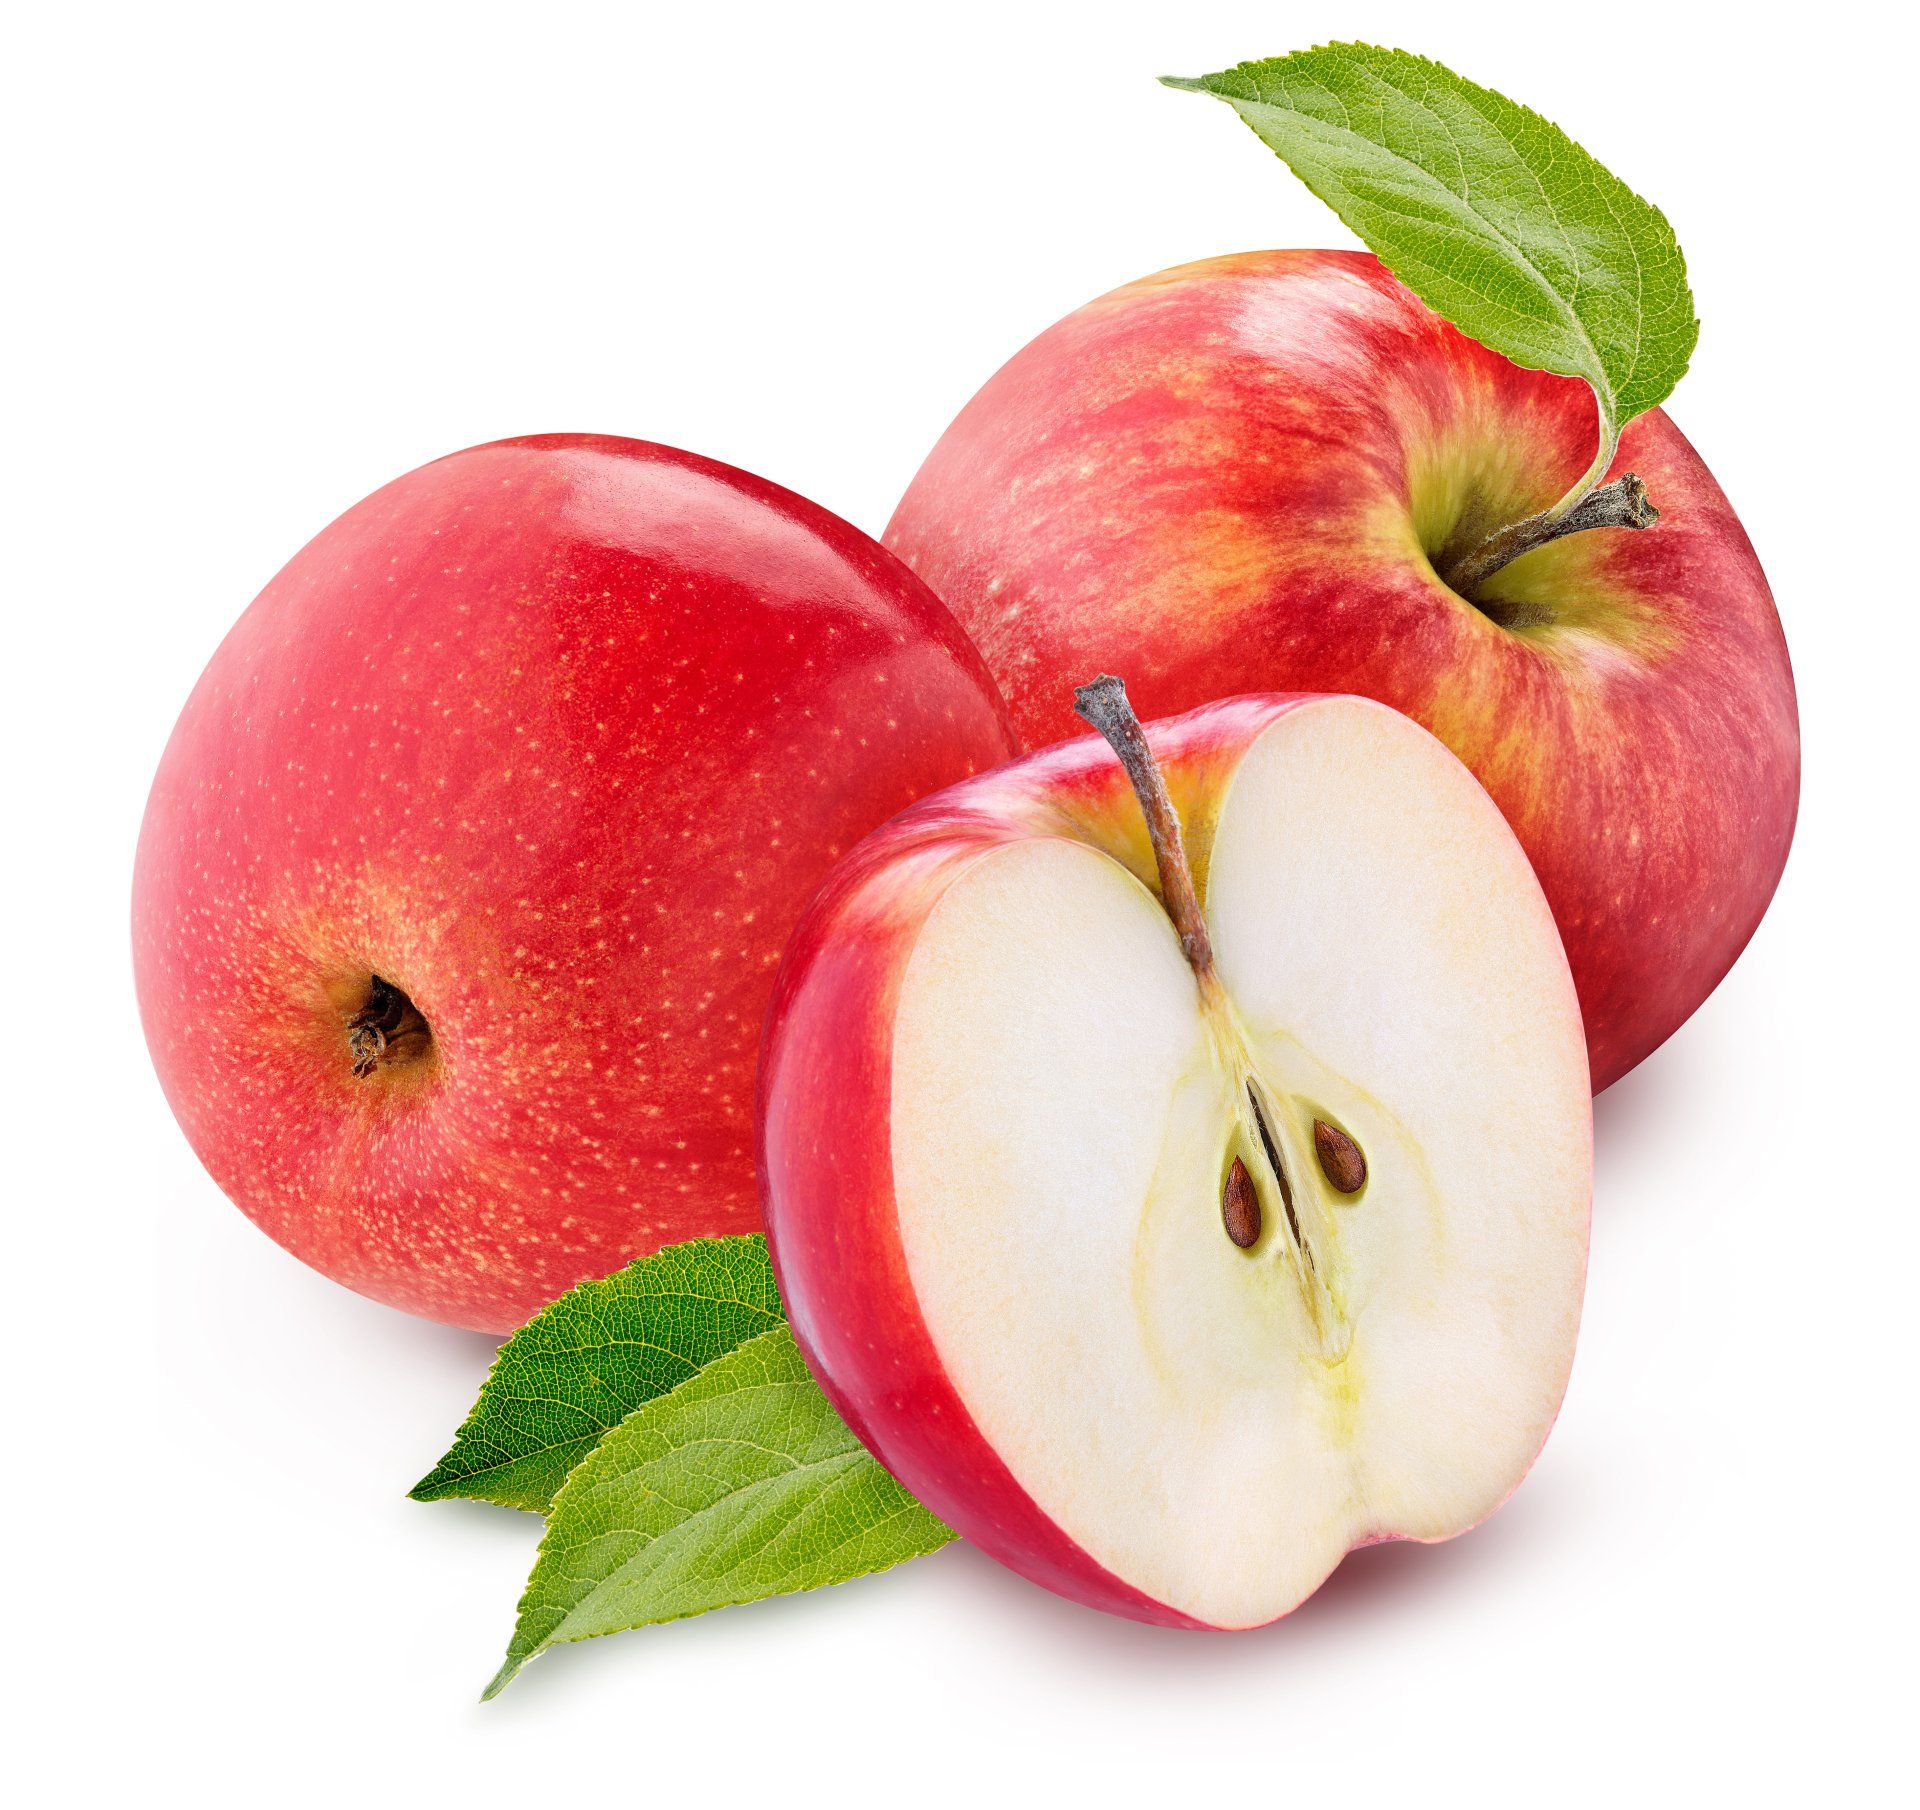 Houdt een appel per dag ontstekingen weg?